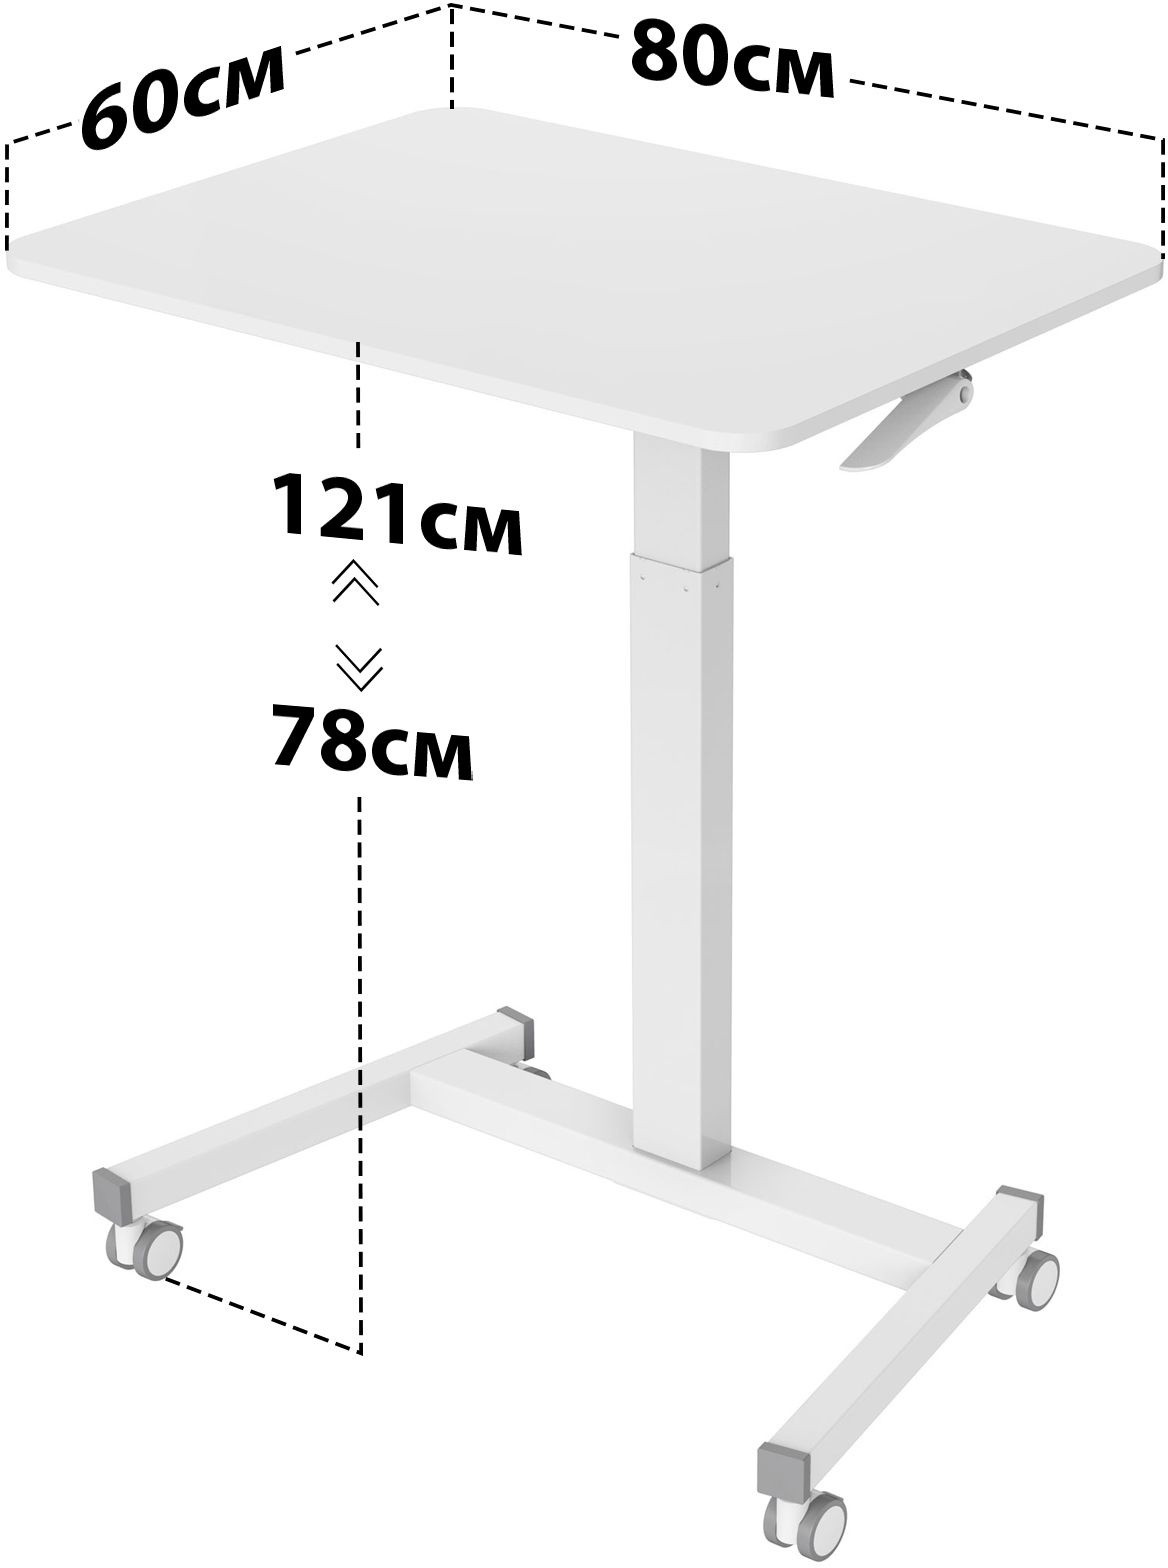 Стол для ноутбука Cactus VM-FDS102 столешница МДФ белый 80x60x121см (CS-FDS102WWT) 